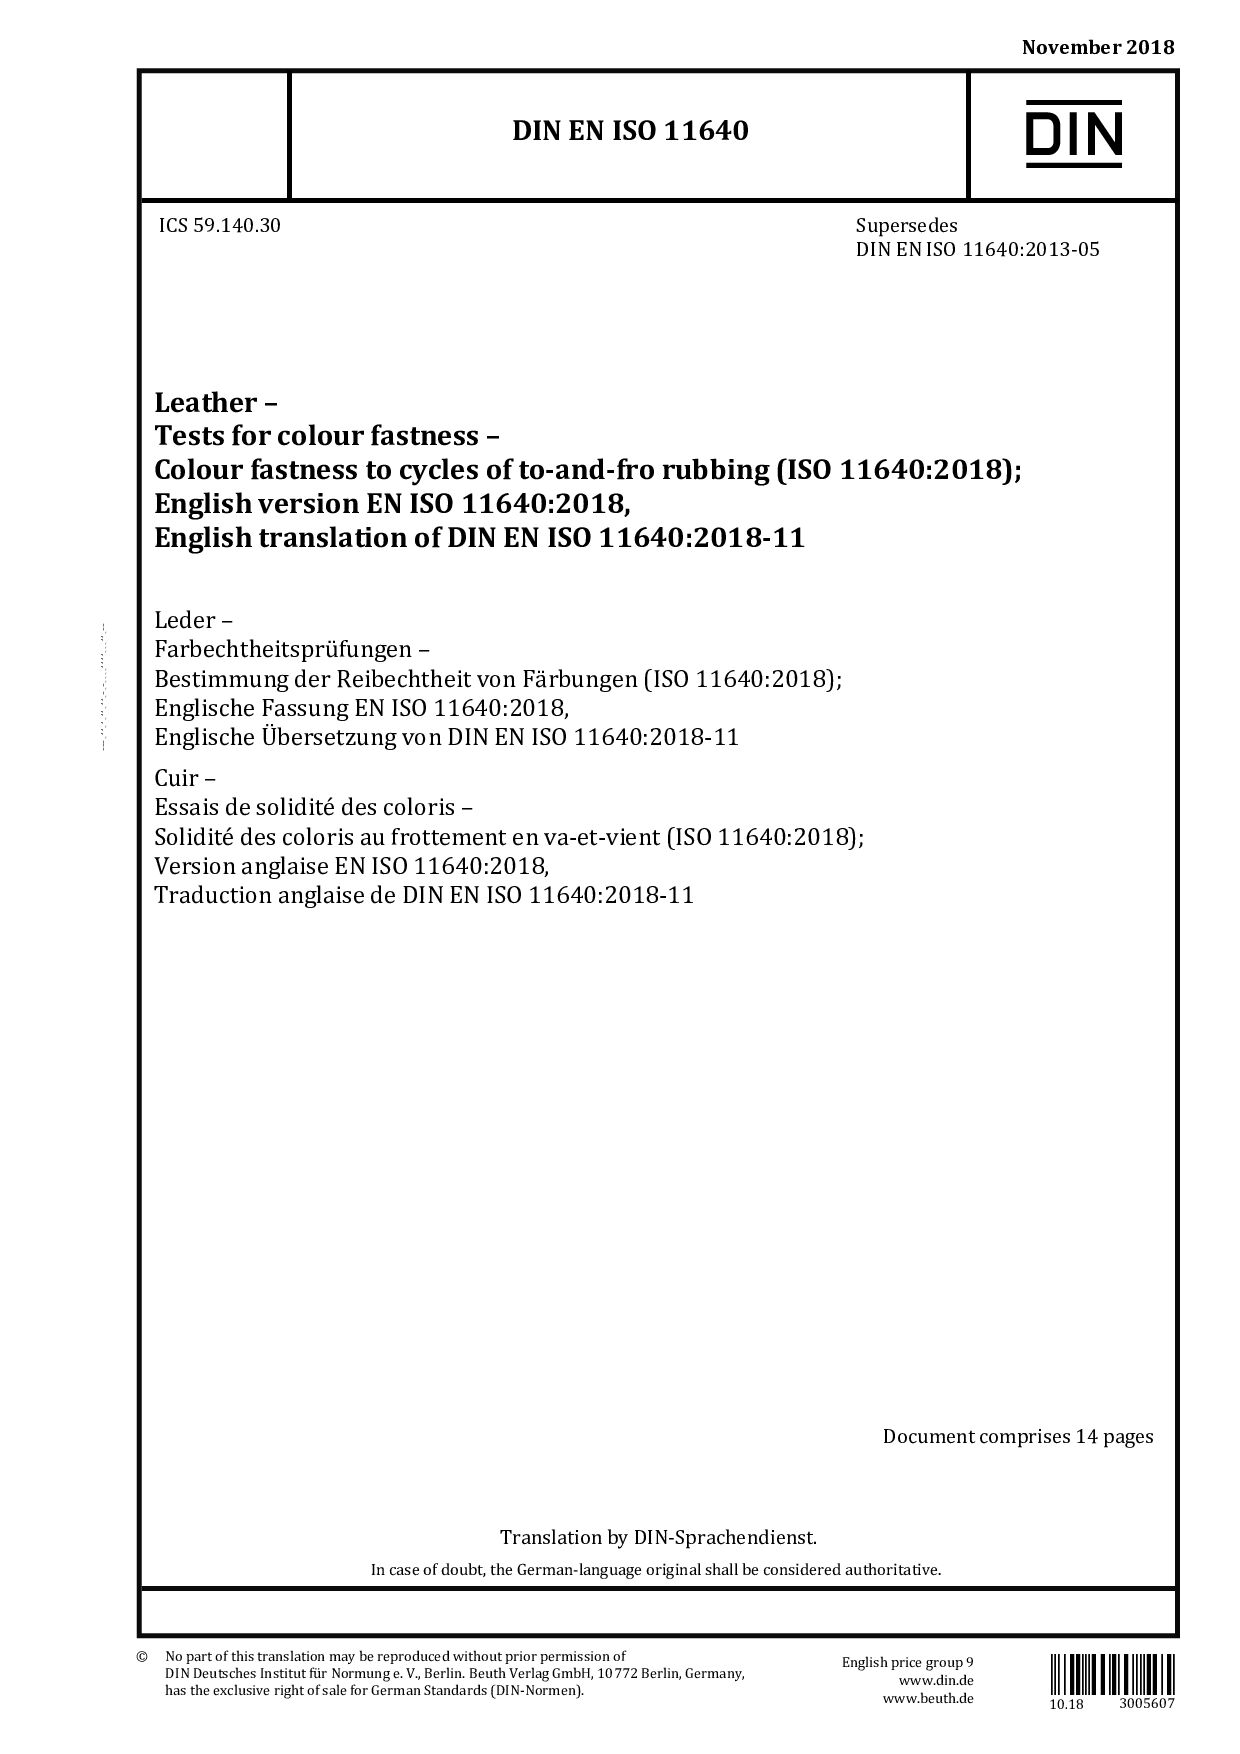 DIN EN ISO 11640:2018-11